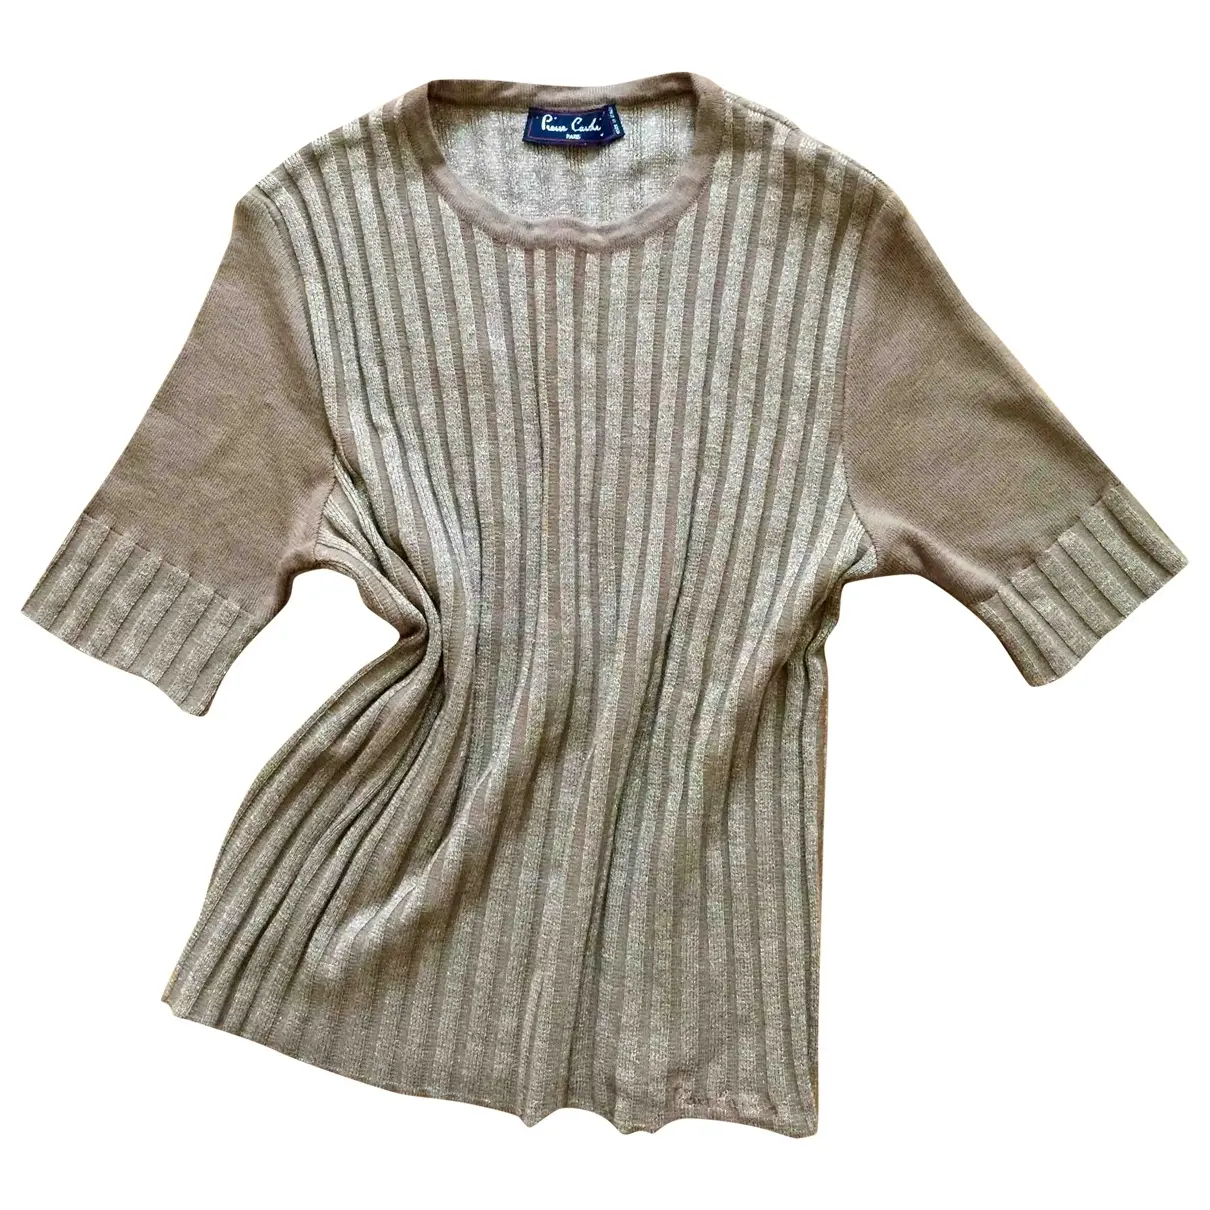 Wool t-shirt Pierre Cardin - Vintage